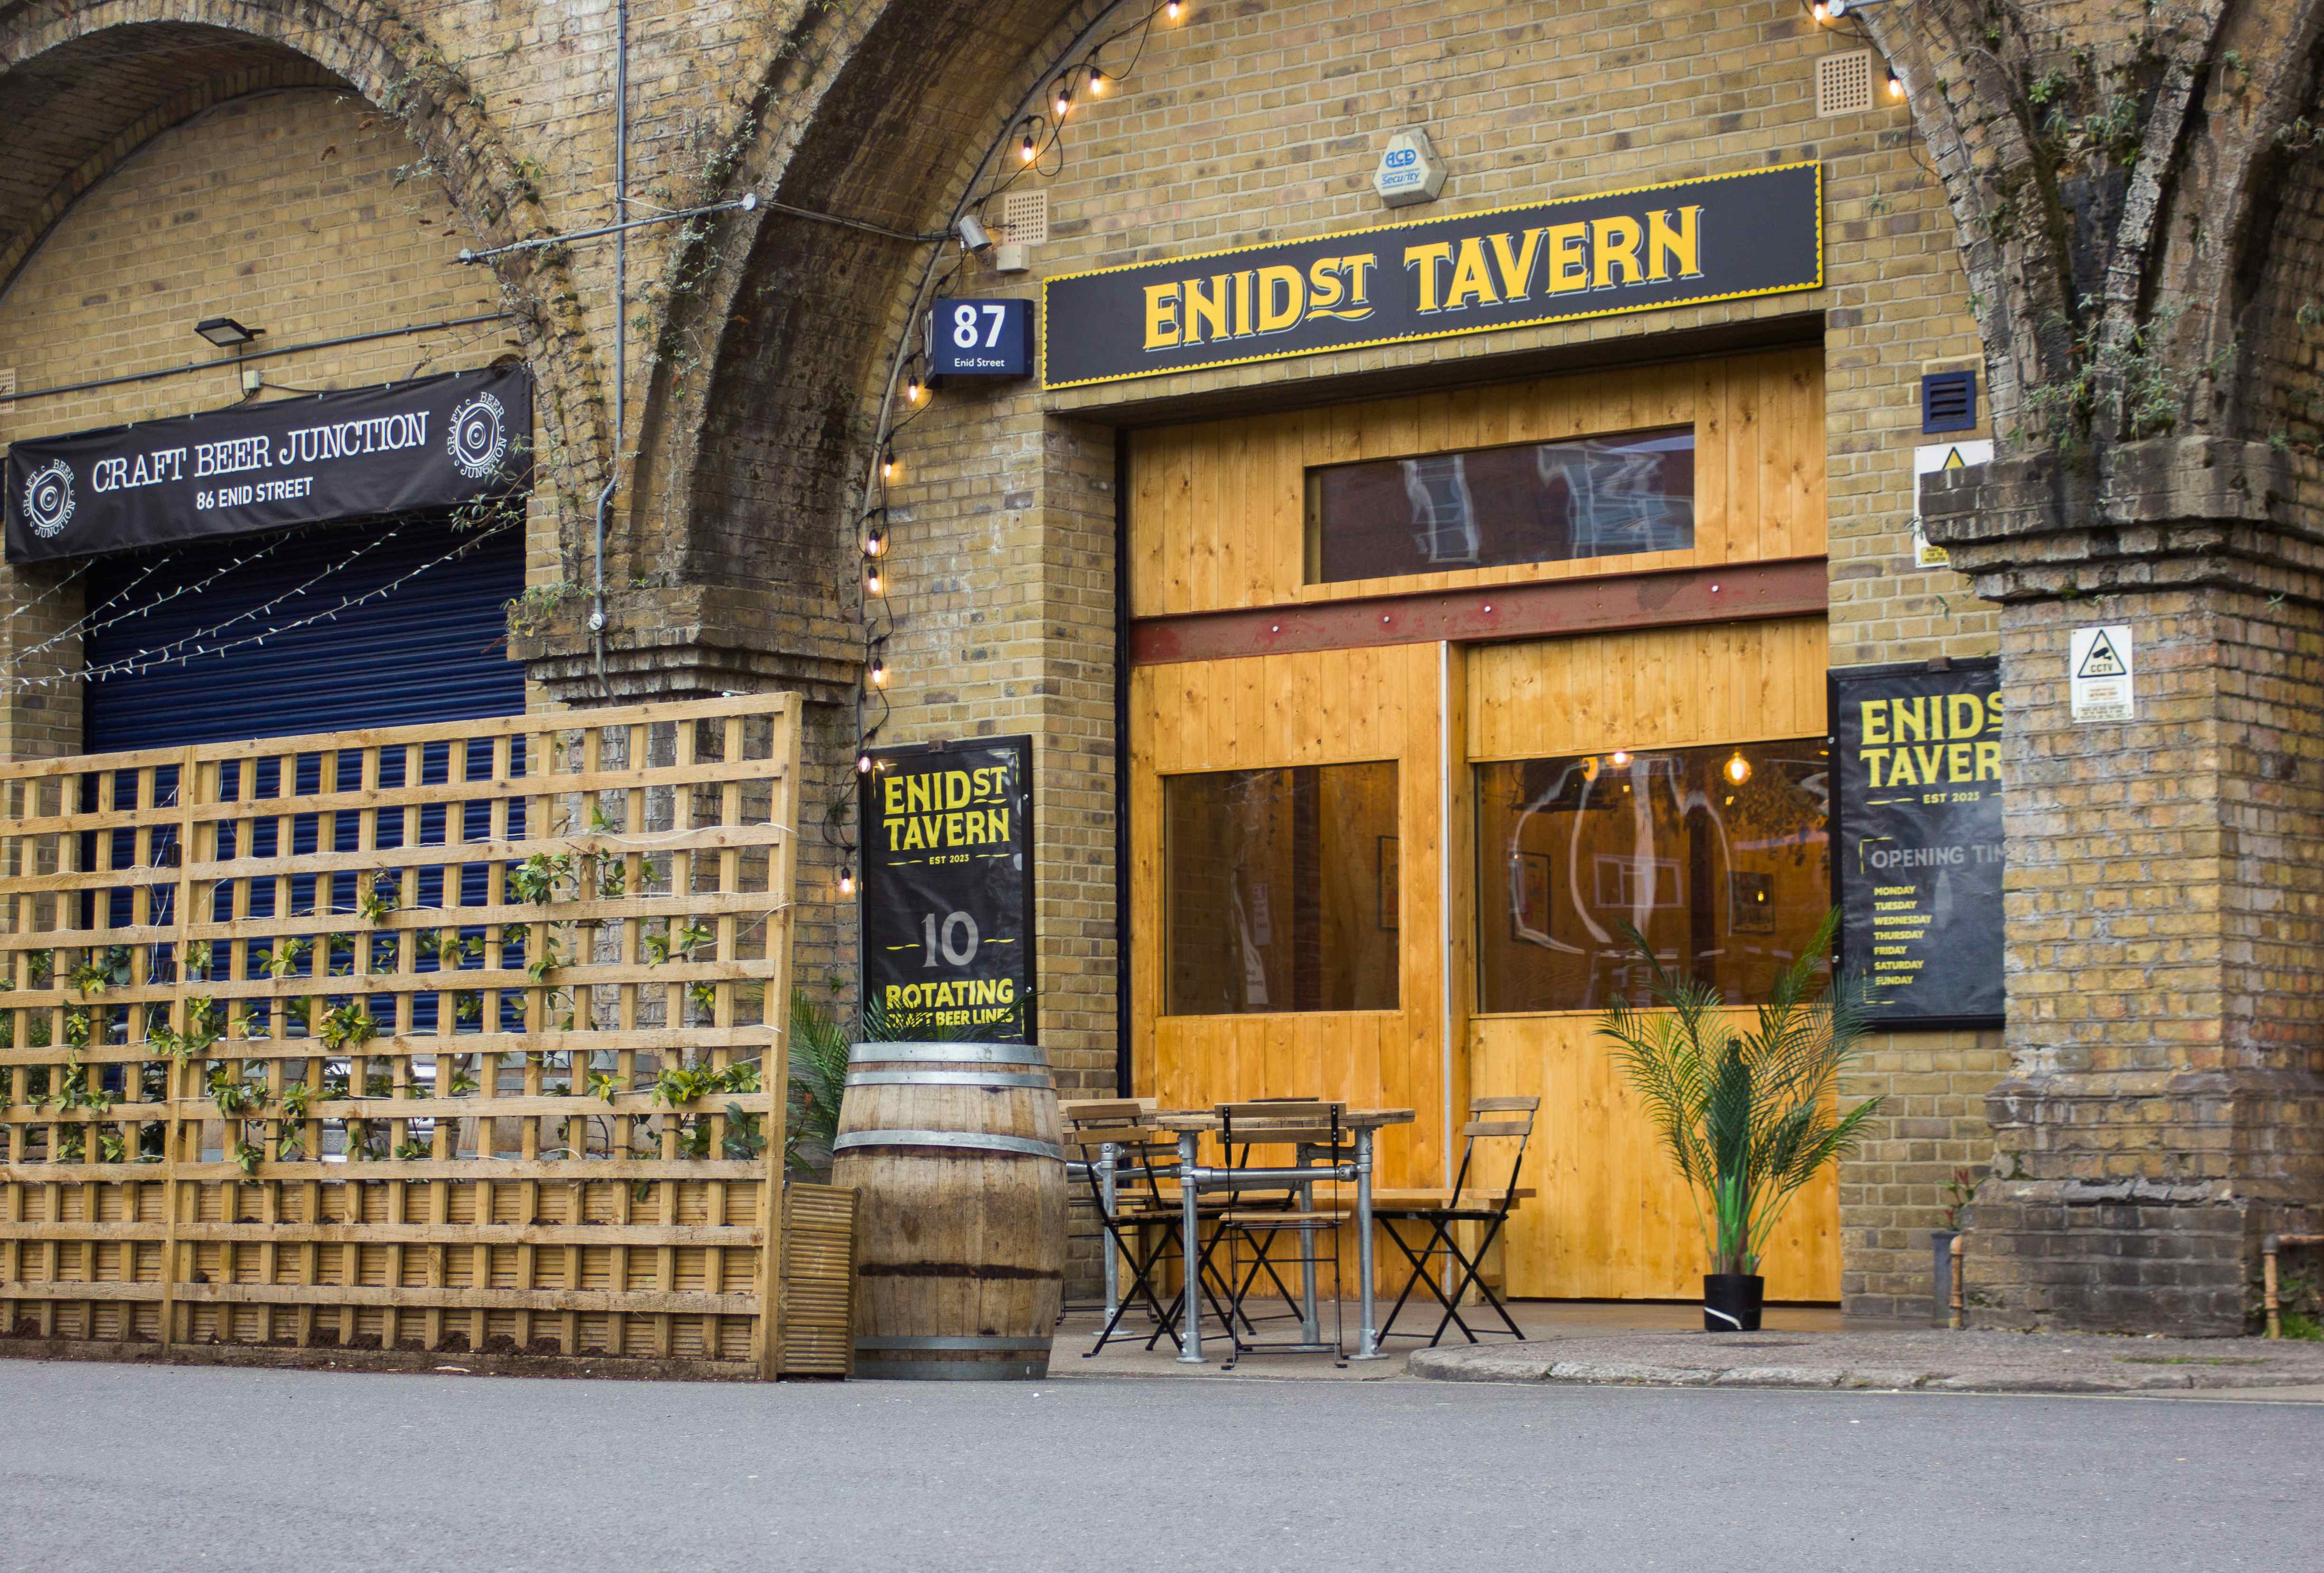 Enid Street Tavern , Enid Street Tavern